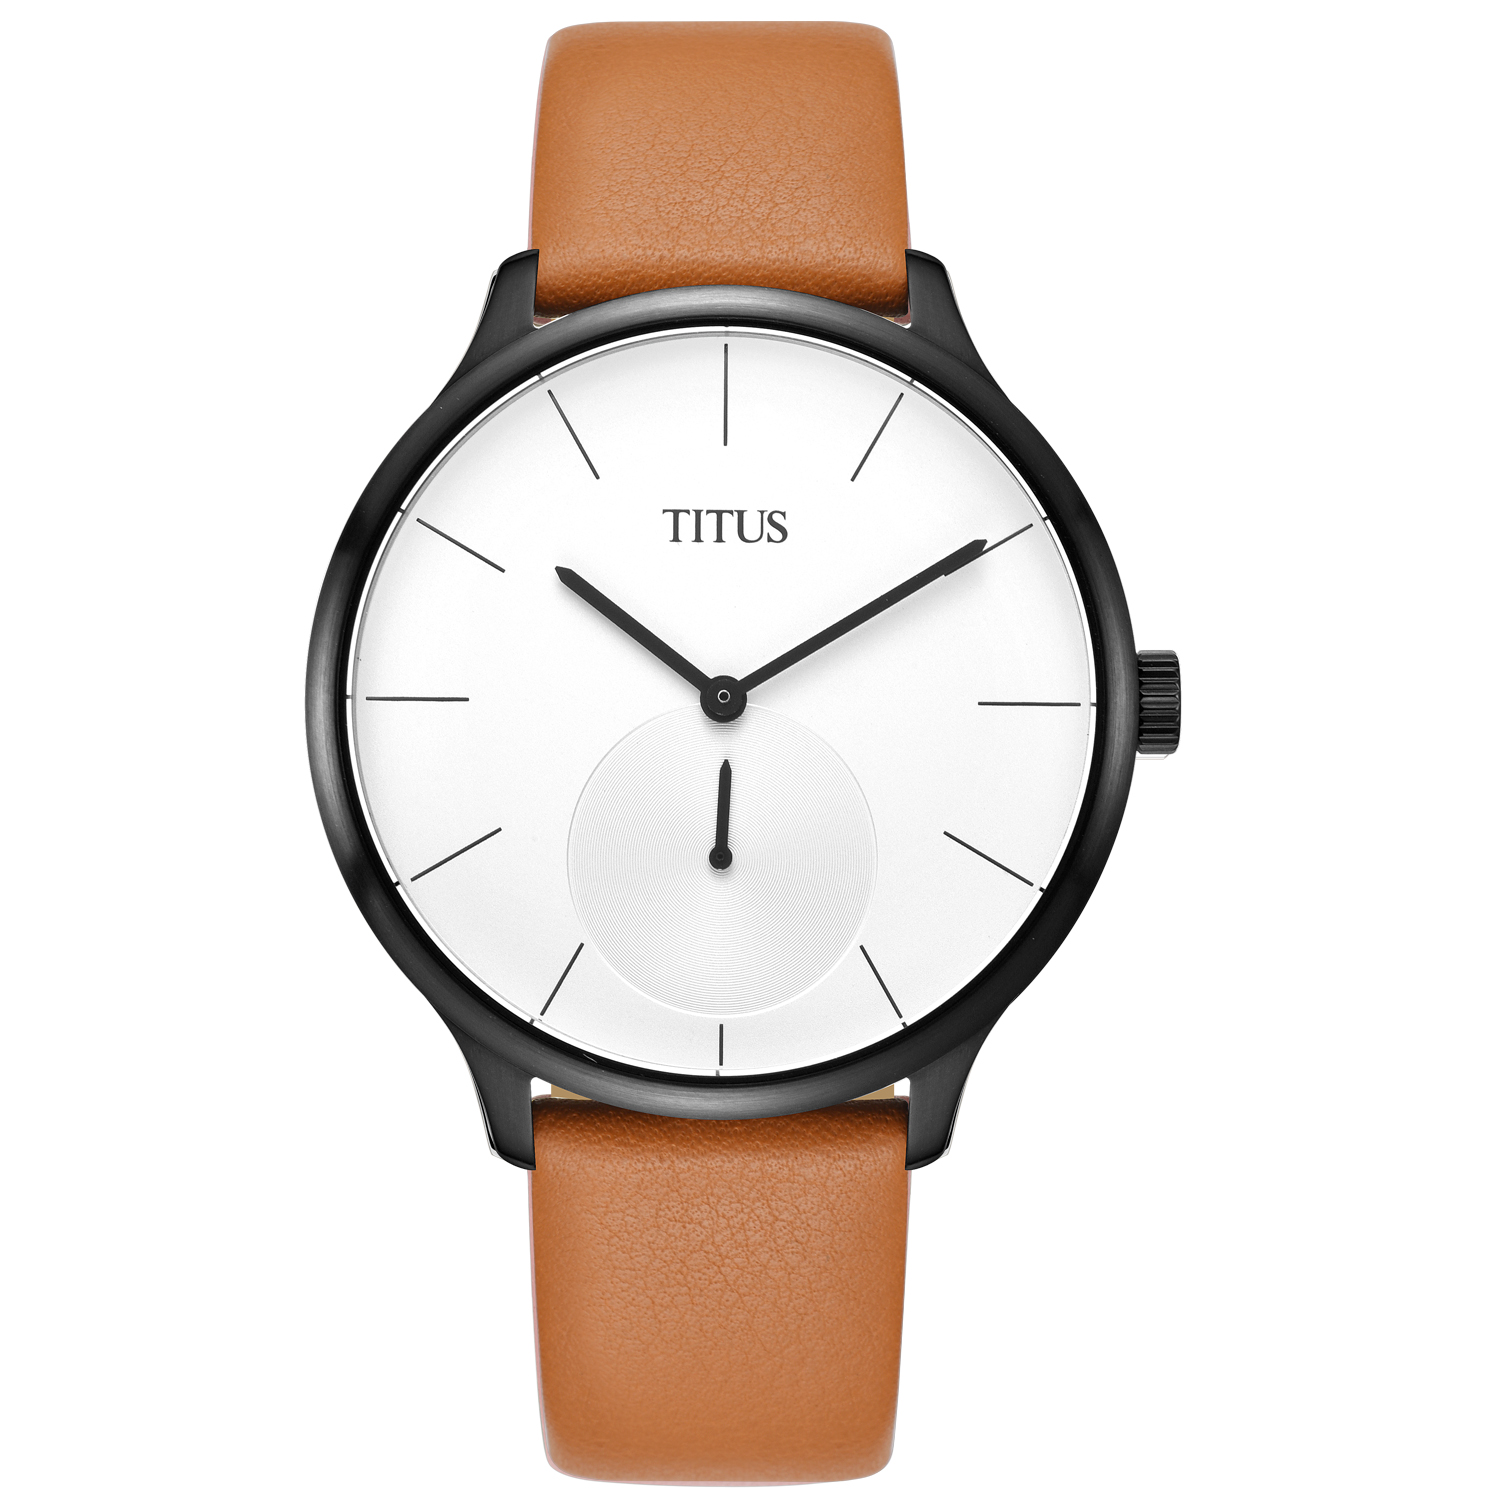 นาฬิกาผู้ชาย Interlude 2 เข็ม ระบบควอตซ์ สายหนัง (W06-03053)